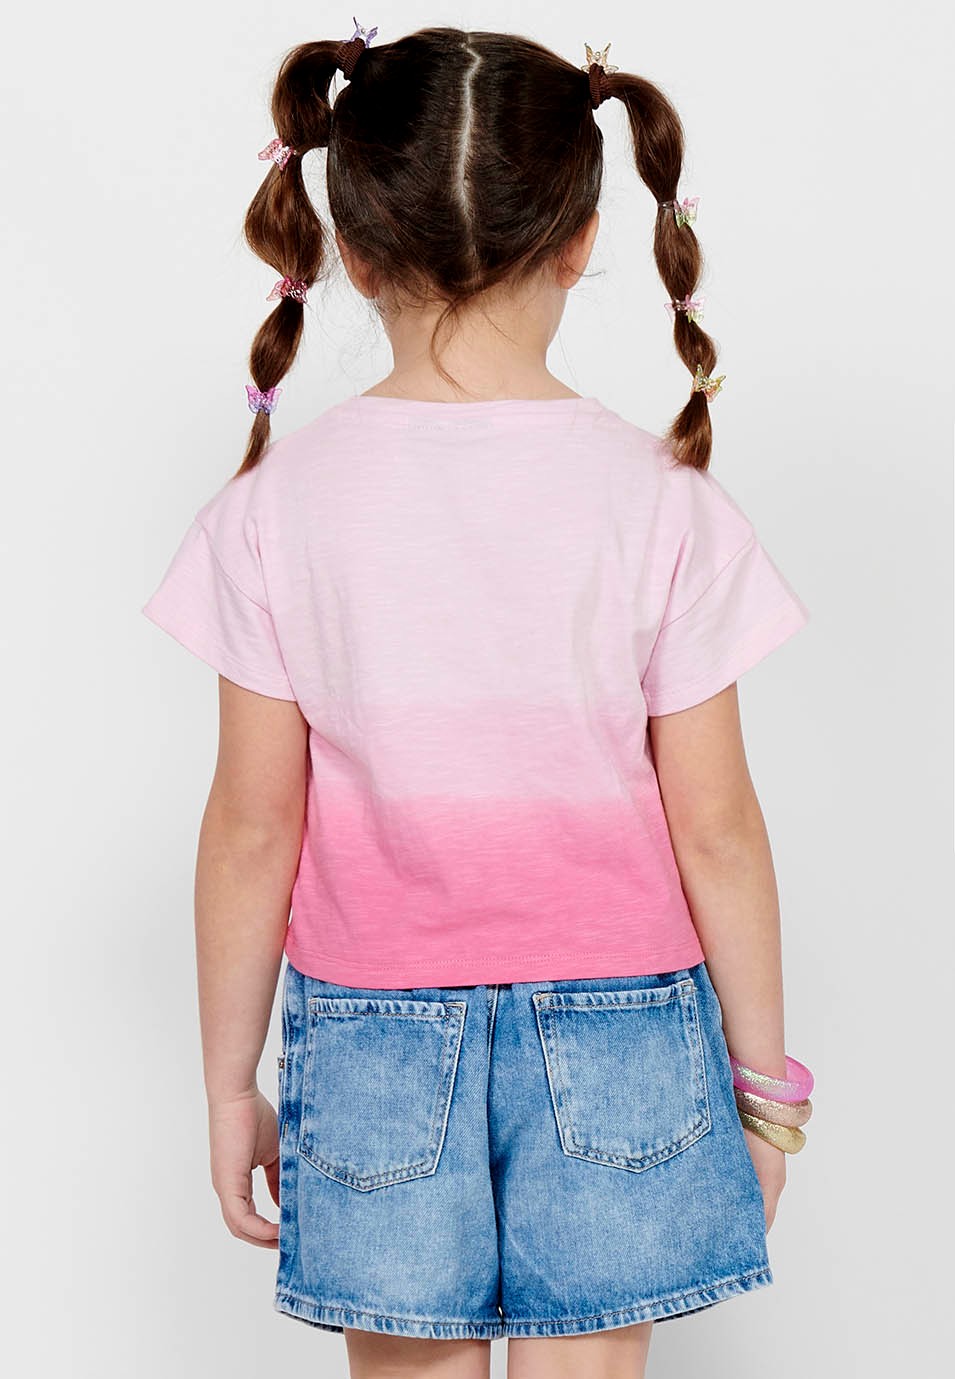 Camiseta de manga corta Top de Algodón con Cuello redondo y Letras delanteras con volumen de Color Rosa para Niña 4